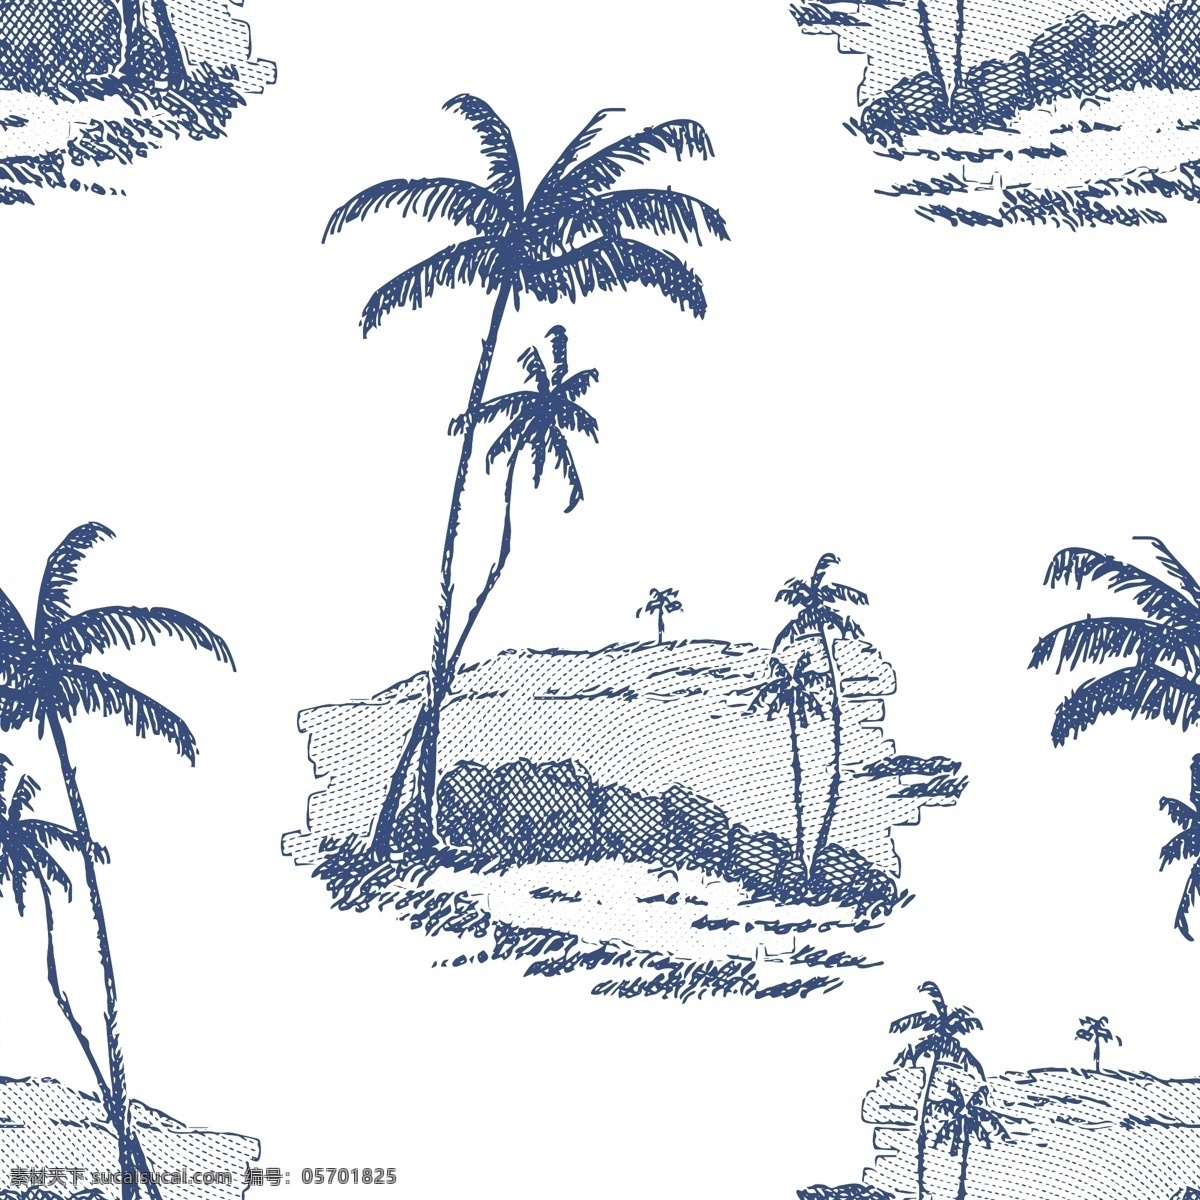 椰树图片 大牌 男装 女装 大牌男装 海滩素材 椰子树 热带草木 热带元素 沙滩素材 潮流男装